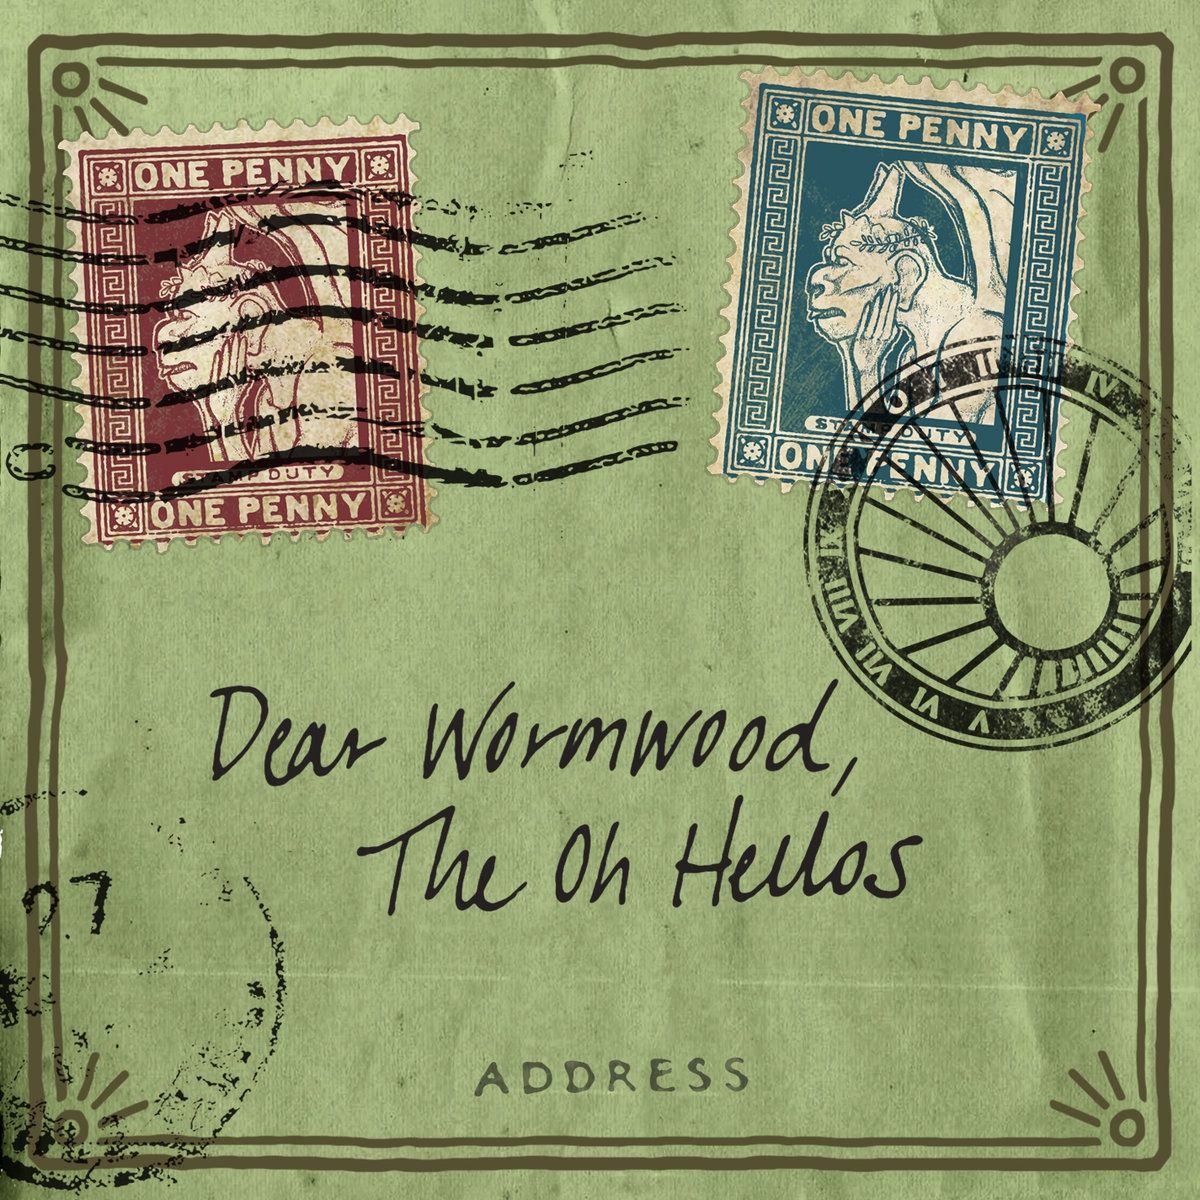 Imagem do álbum Dear Wormwood do(a) artista The Oh Hello's